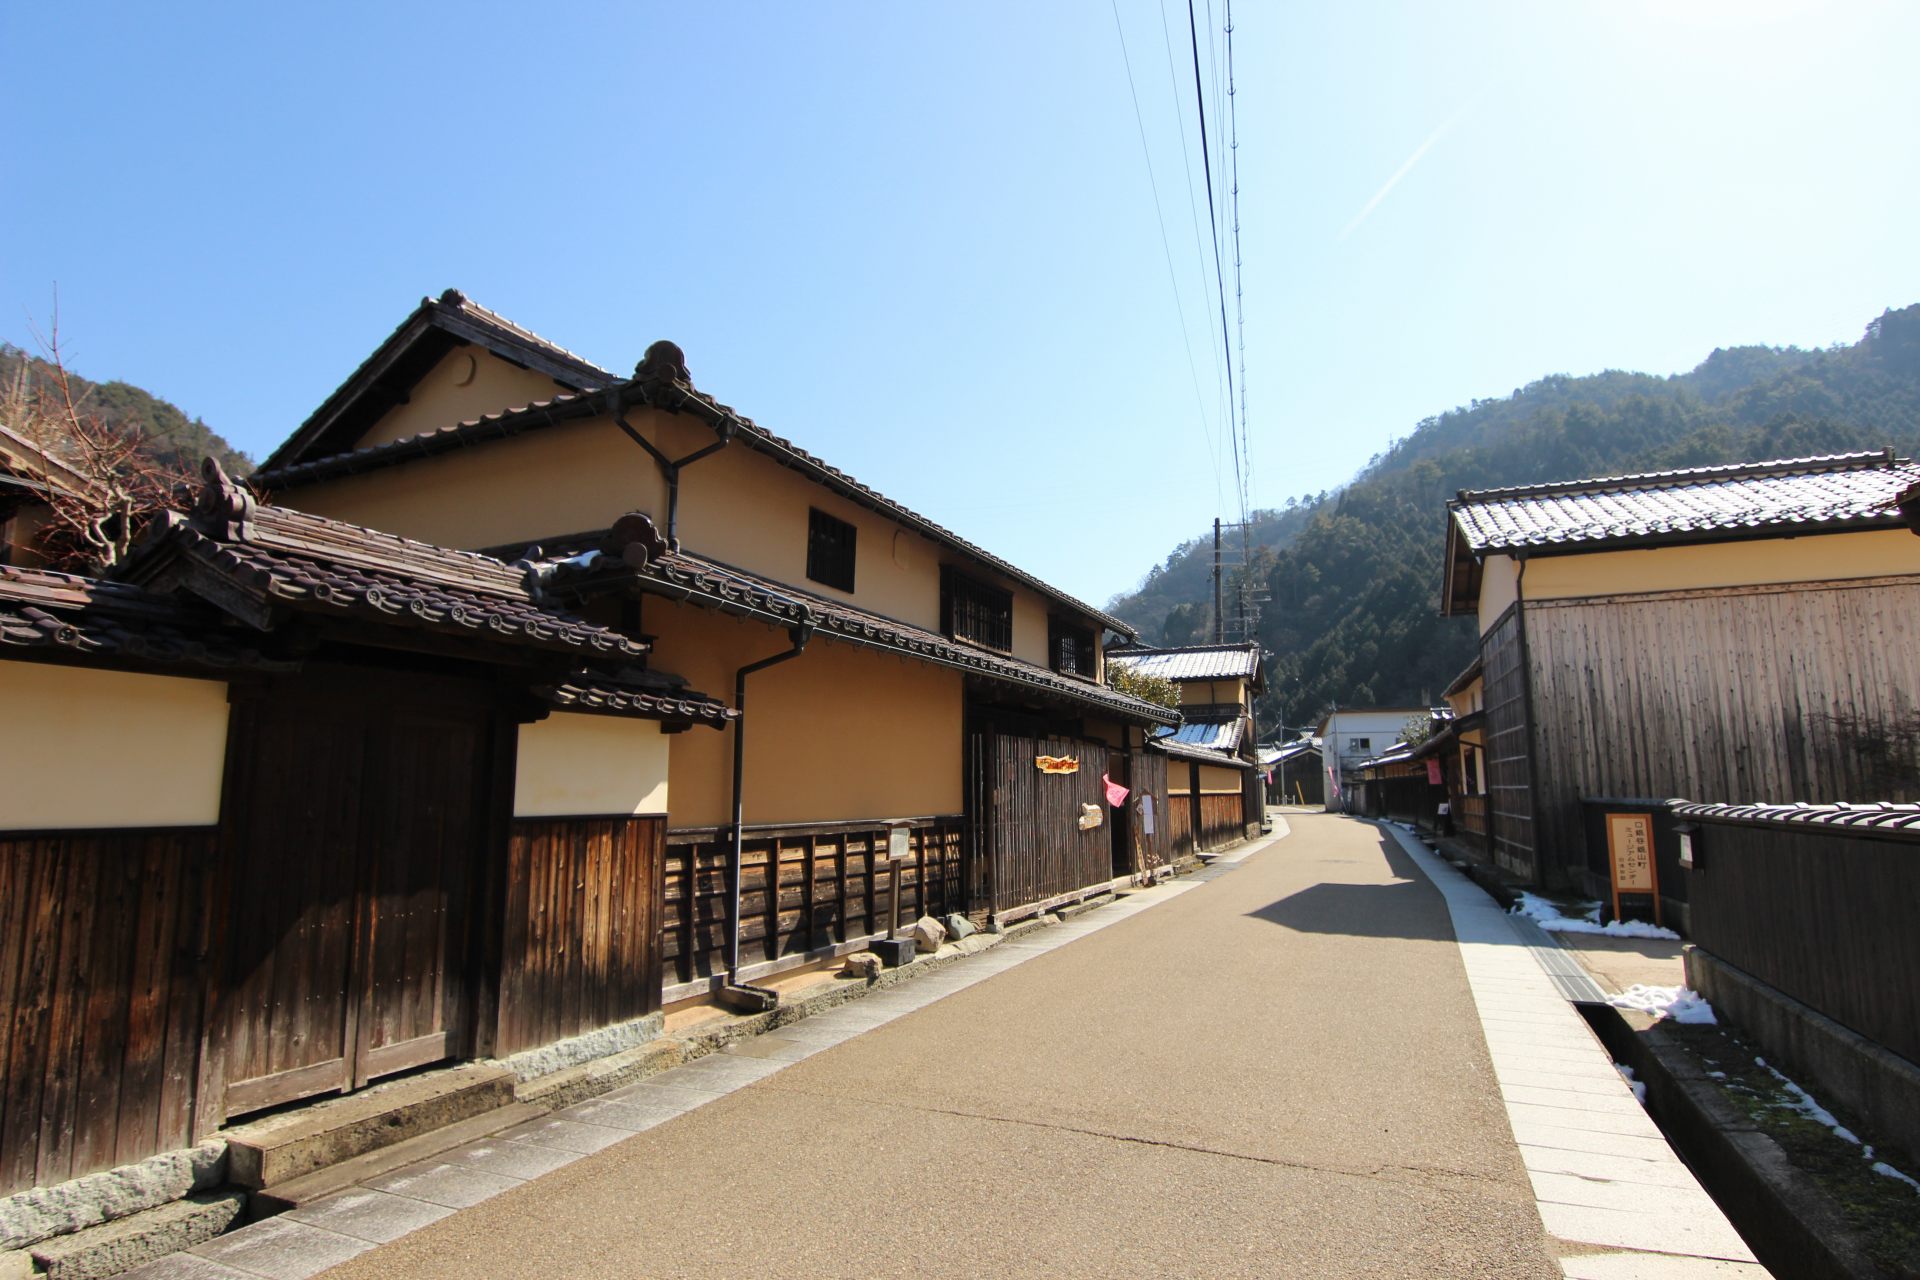 Après avoir visité Ikuno Ginzan, conduisez 5 minutes et visitez l'ancienne ville minière. Les maisons élégantes du début de l'ère moderne témoignent de la prospérité de l'époque.